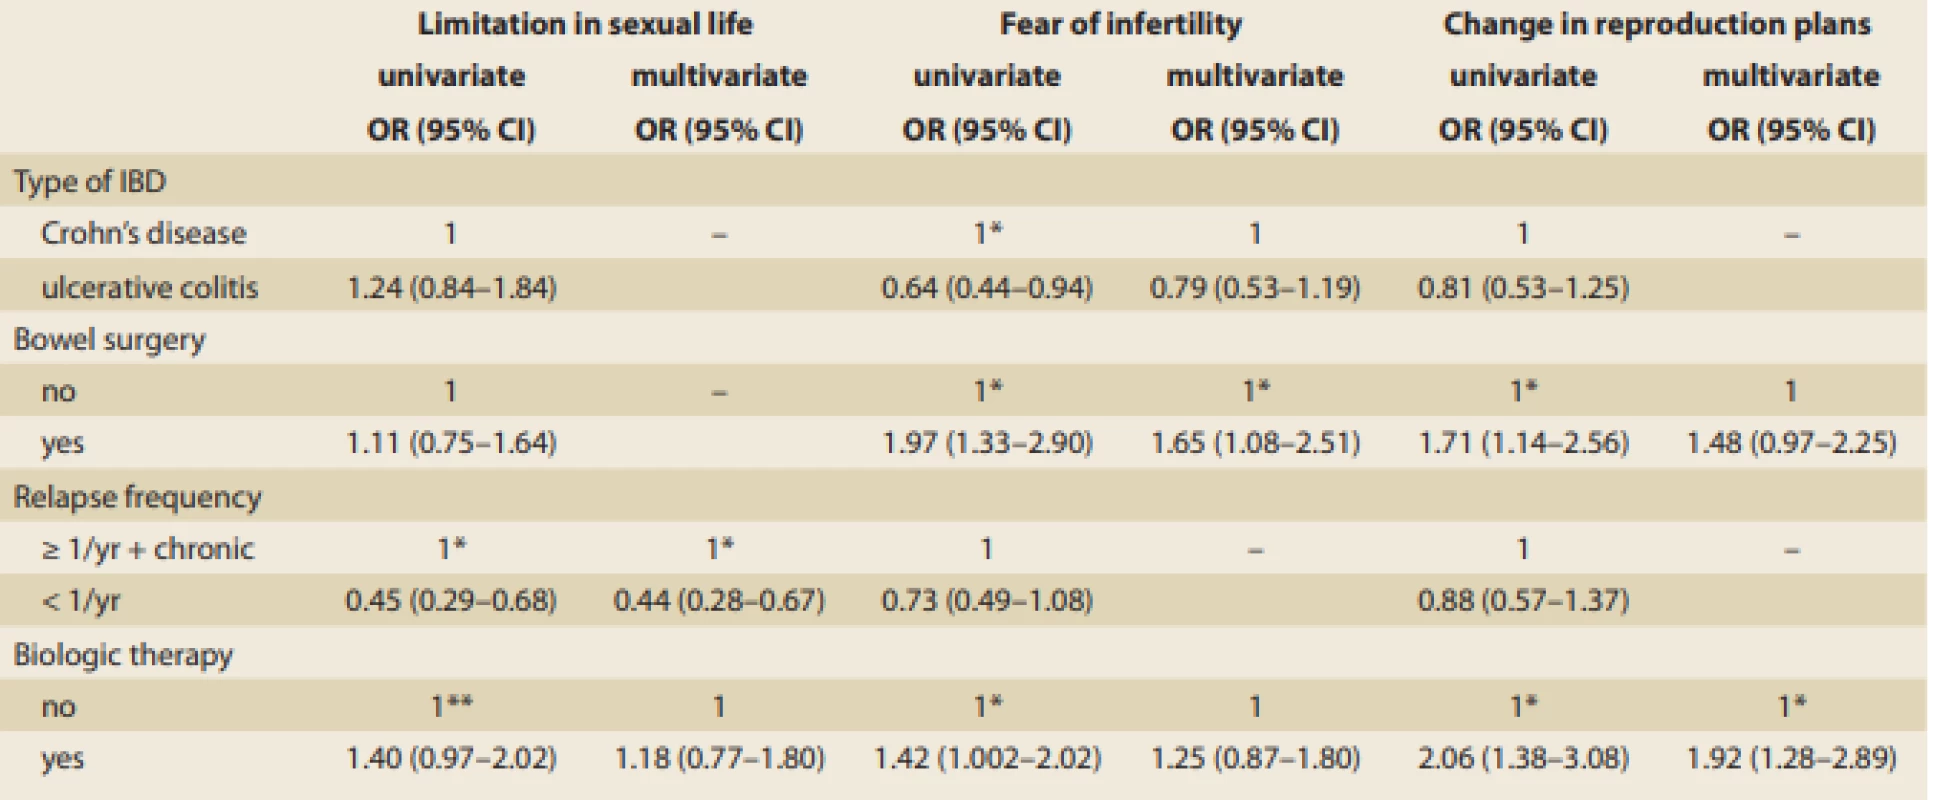 Clinical factors associated with reproductive outcomes in females with infl ammatory bowel disease (IBD).
Tab. 3. Klinické faktory ovlivňující reprodukční chování a plány u pacientek s idiopatickými střevními záněty (IBD).